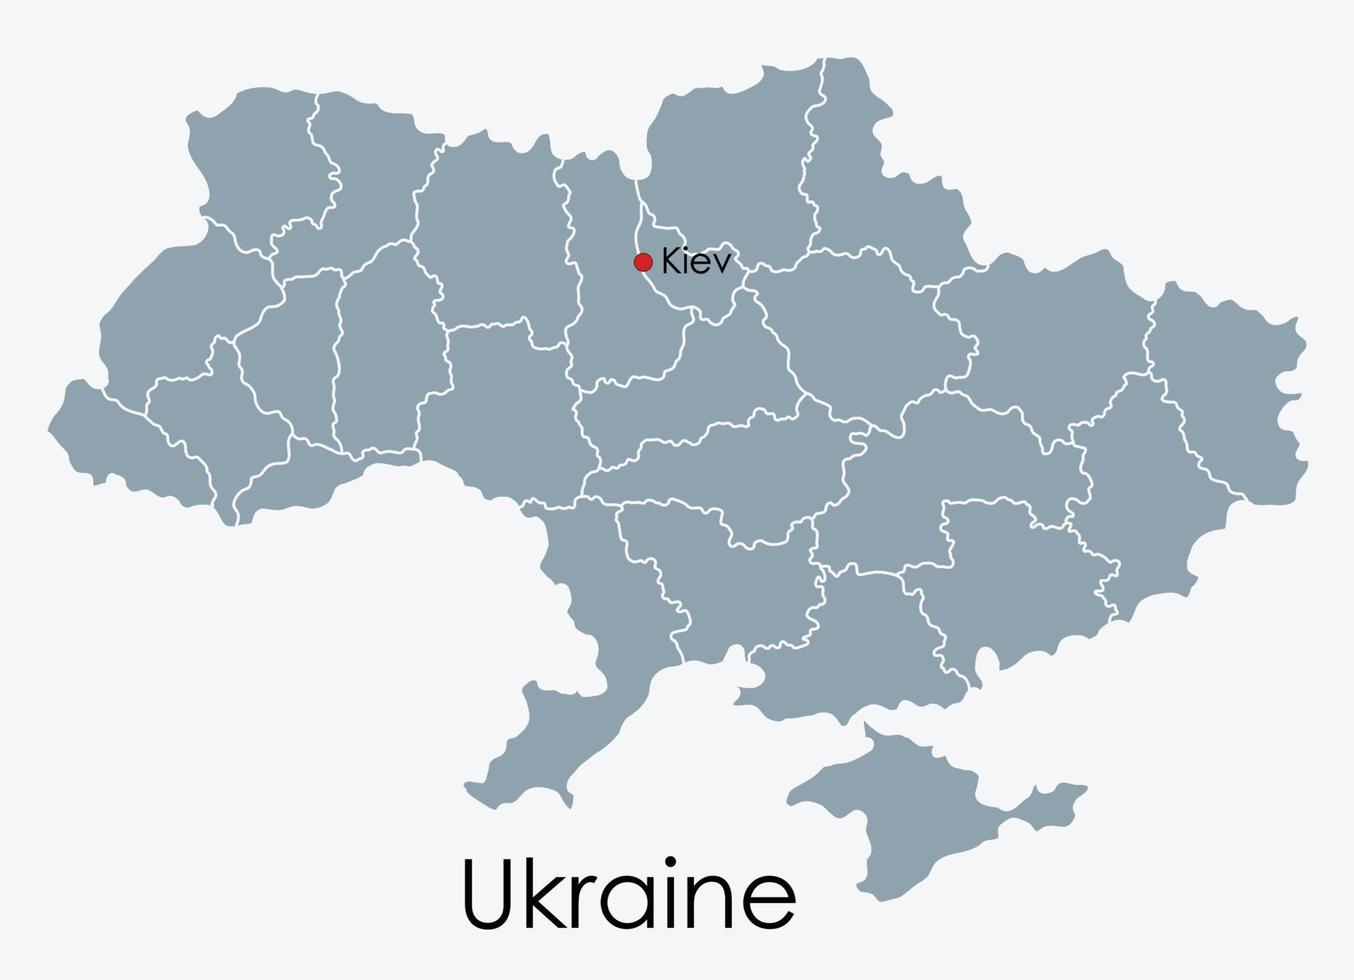 ucraina mappa disegno a mano libera su sfondo bianco. vettore